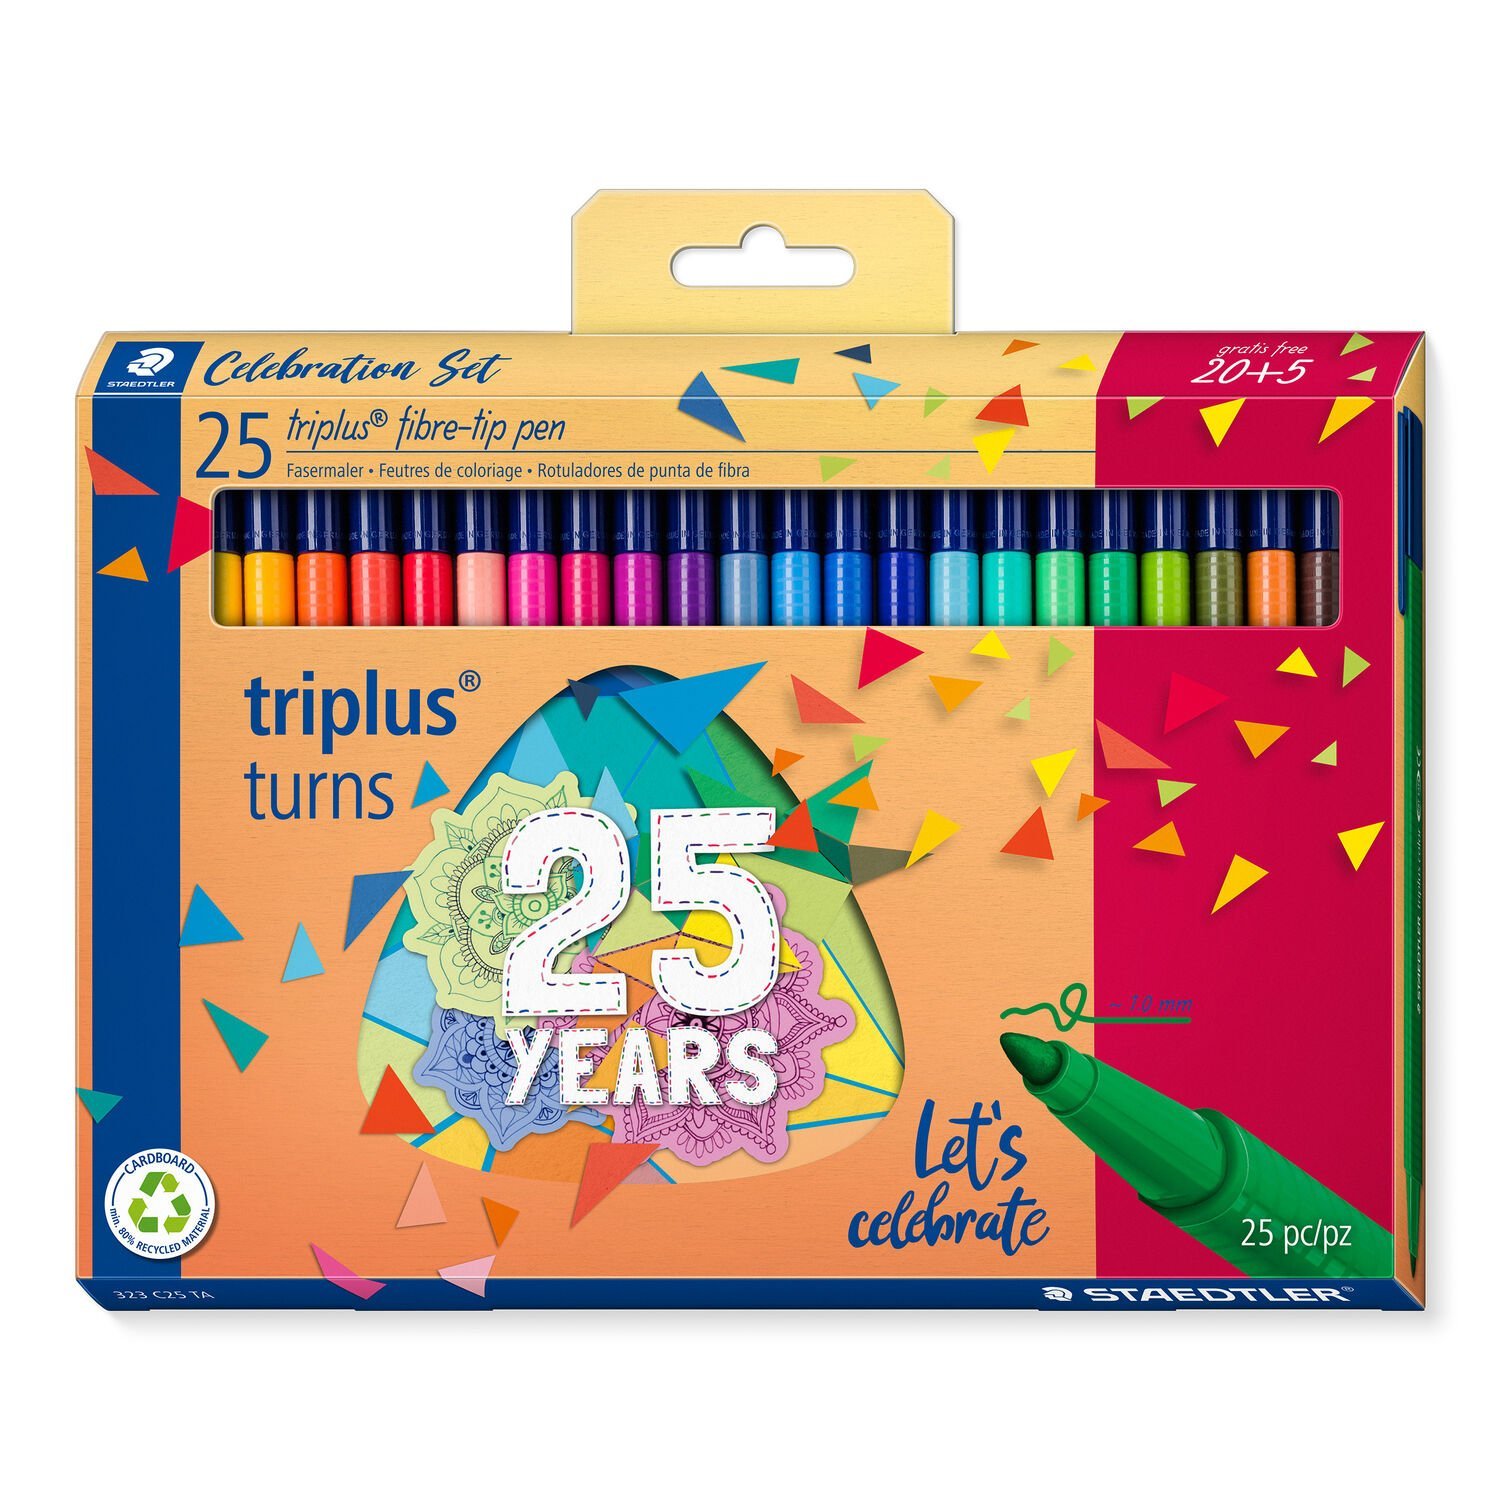 Caja de cartón con 25 colores triplus en varios colores, triplus anniversary